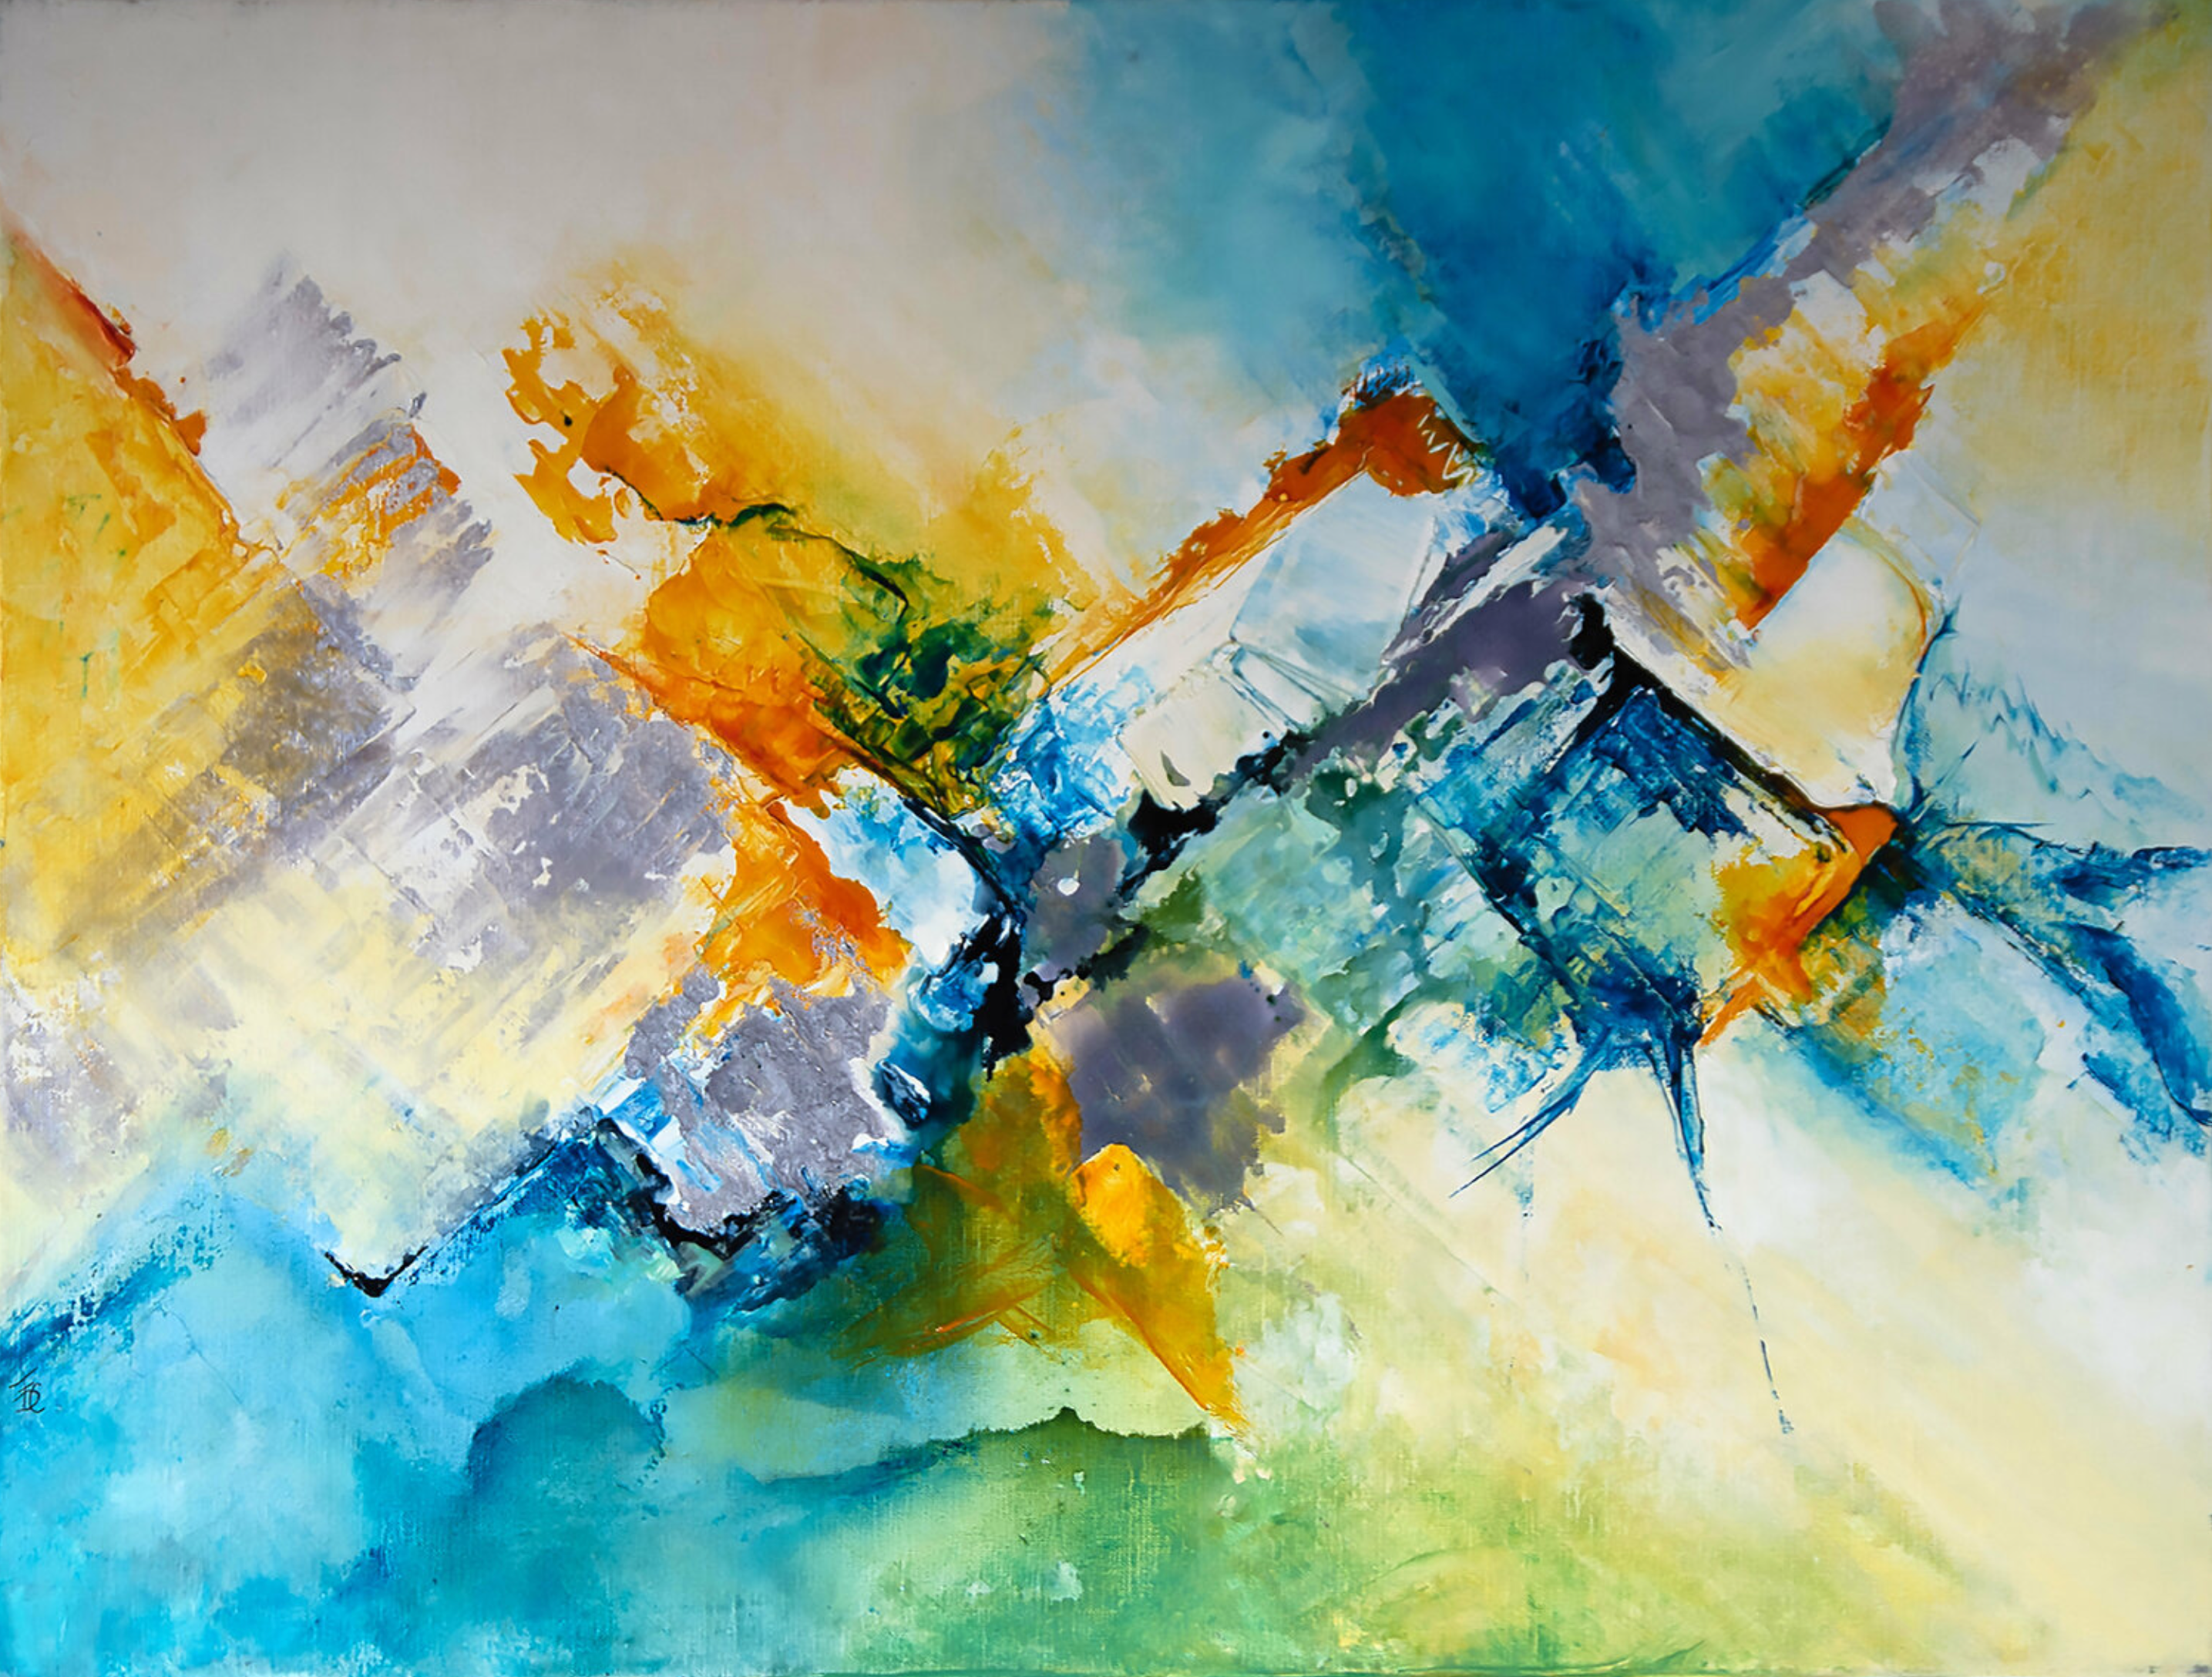 El cuadro abstracto "Ossau Iraty" de Françoise Dugourd-Caput muestra una abstracción que recuerda a una luminosa montaña del País Vasco, de ahí el título, el azul del cielo, el naranja de las frutas y flores, el amarillo del sol, el verde de los prados y los picos grises de las montañas